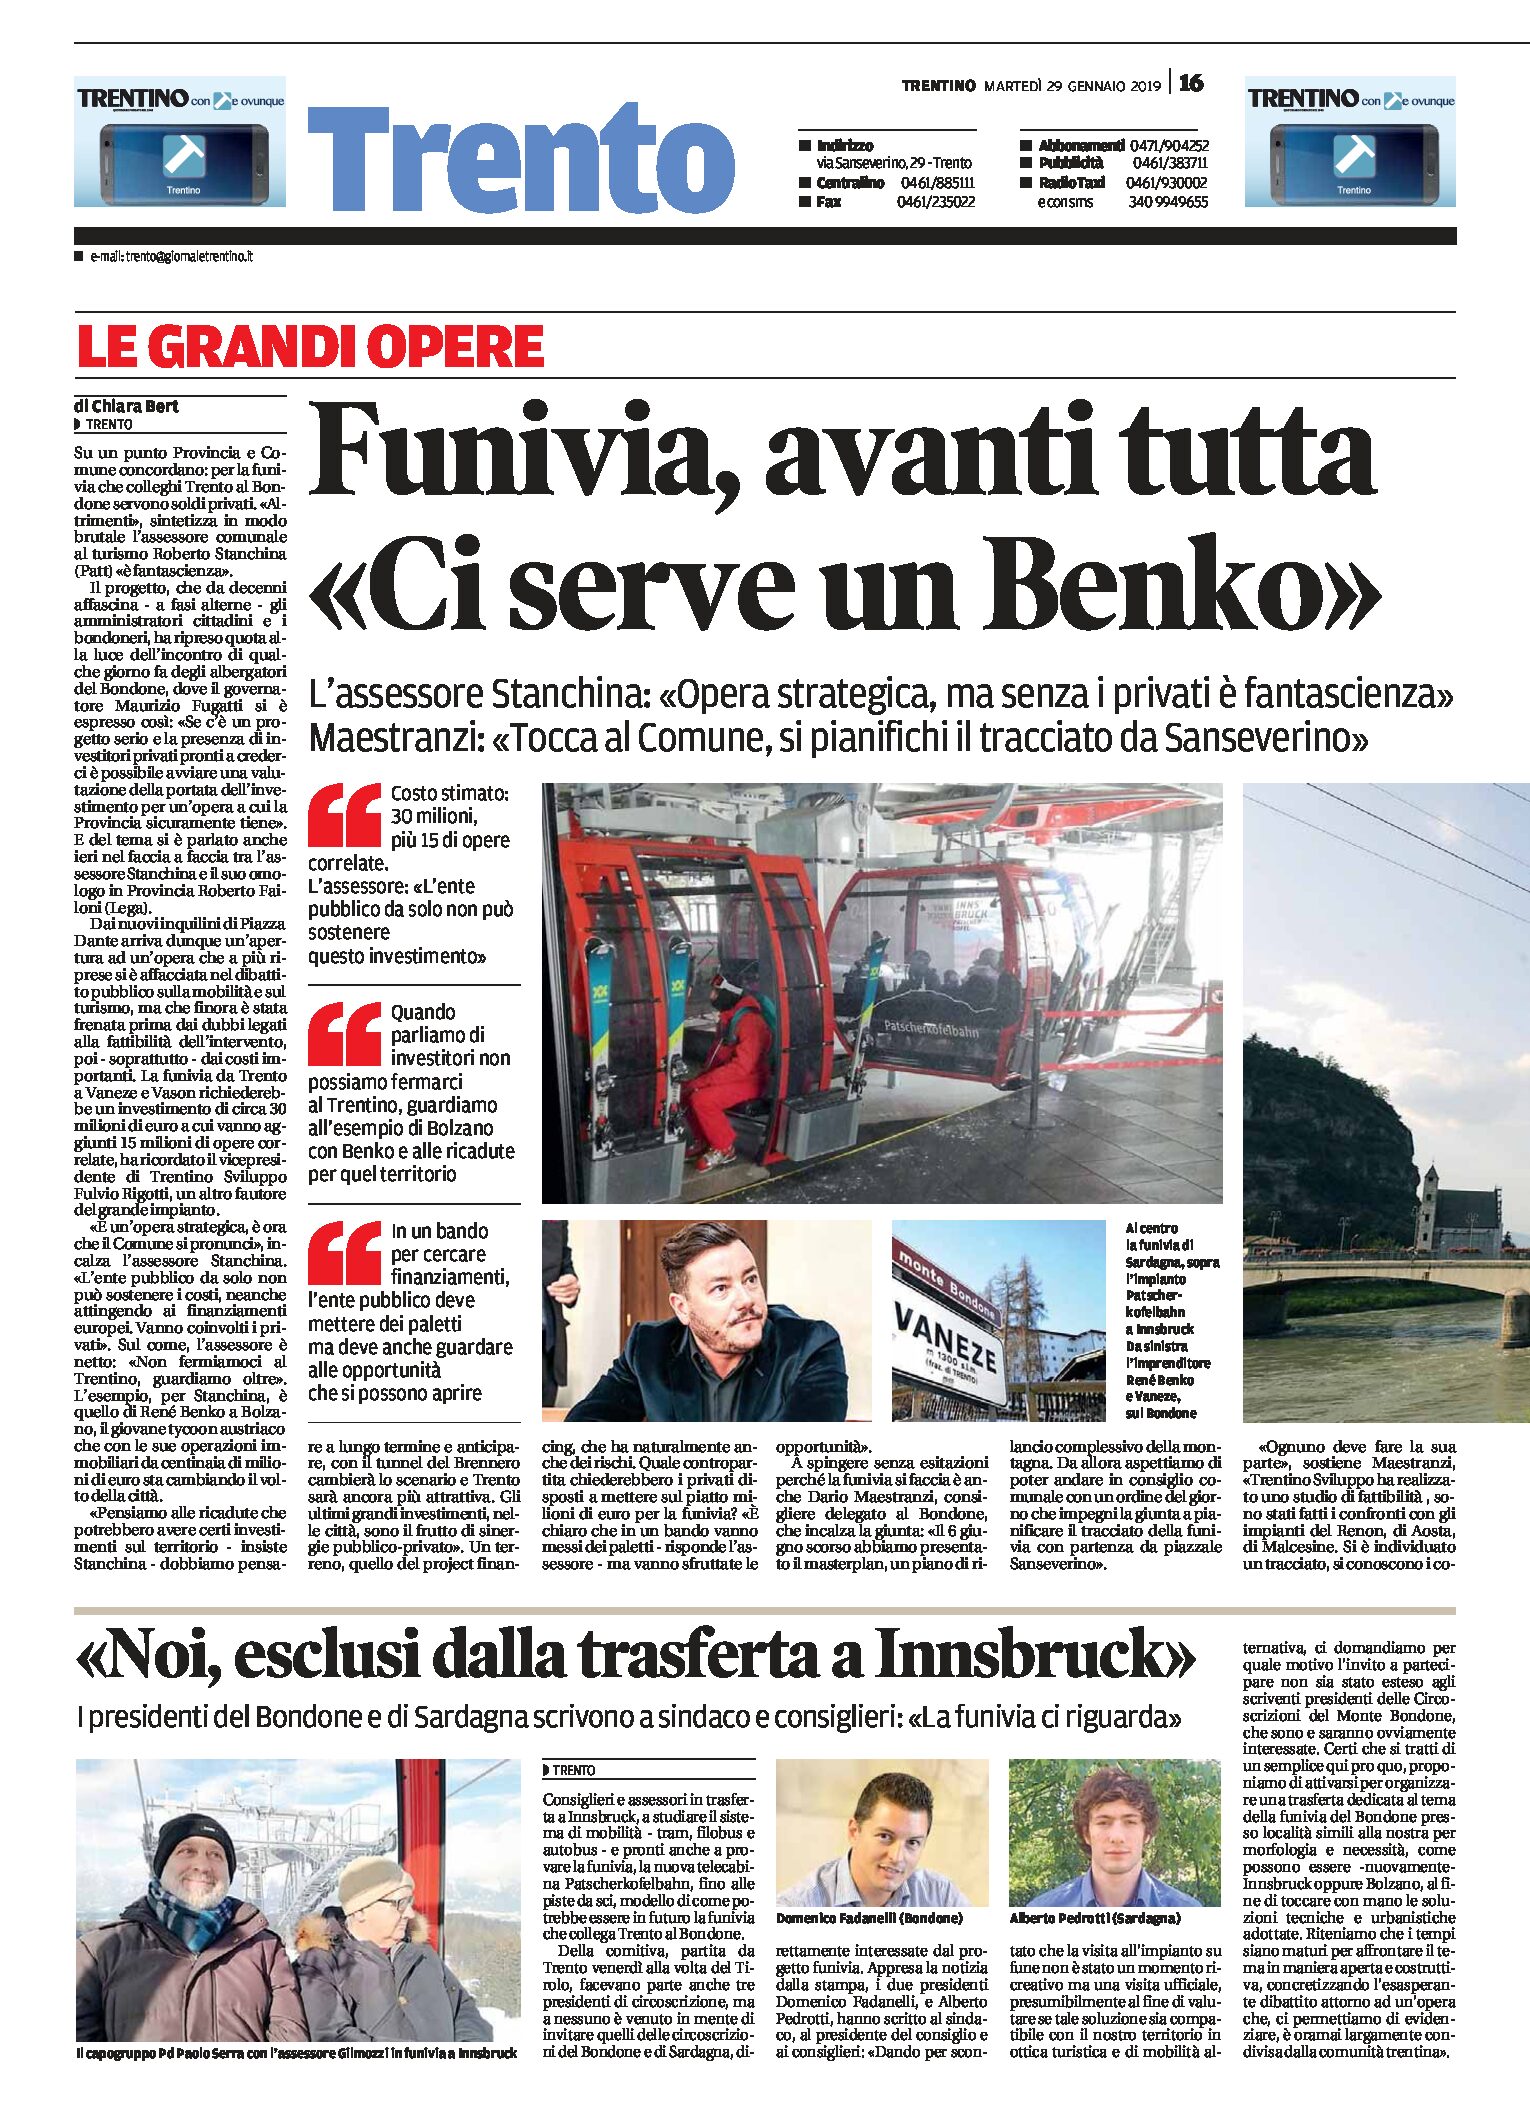 Funivia Trento-Bondone: Stanchina “ci serve un Benko”